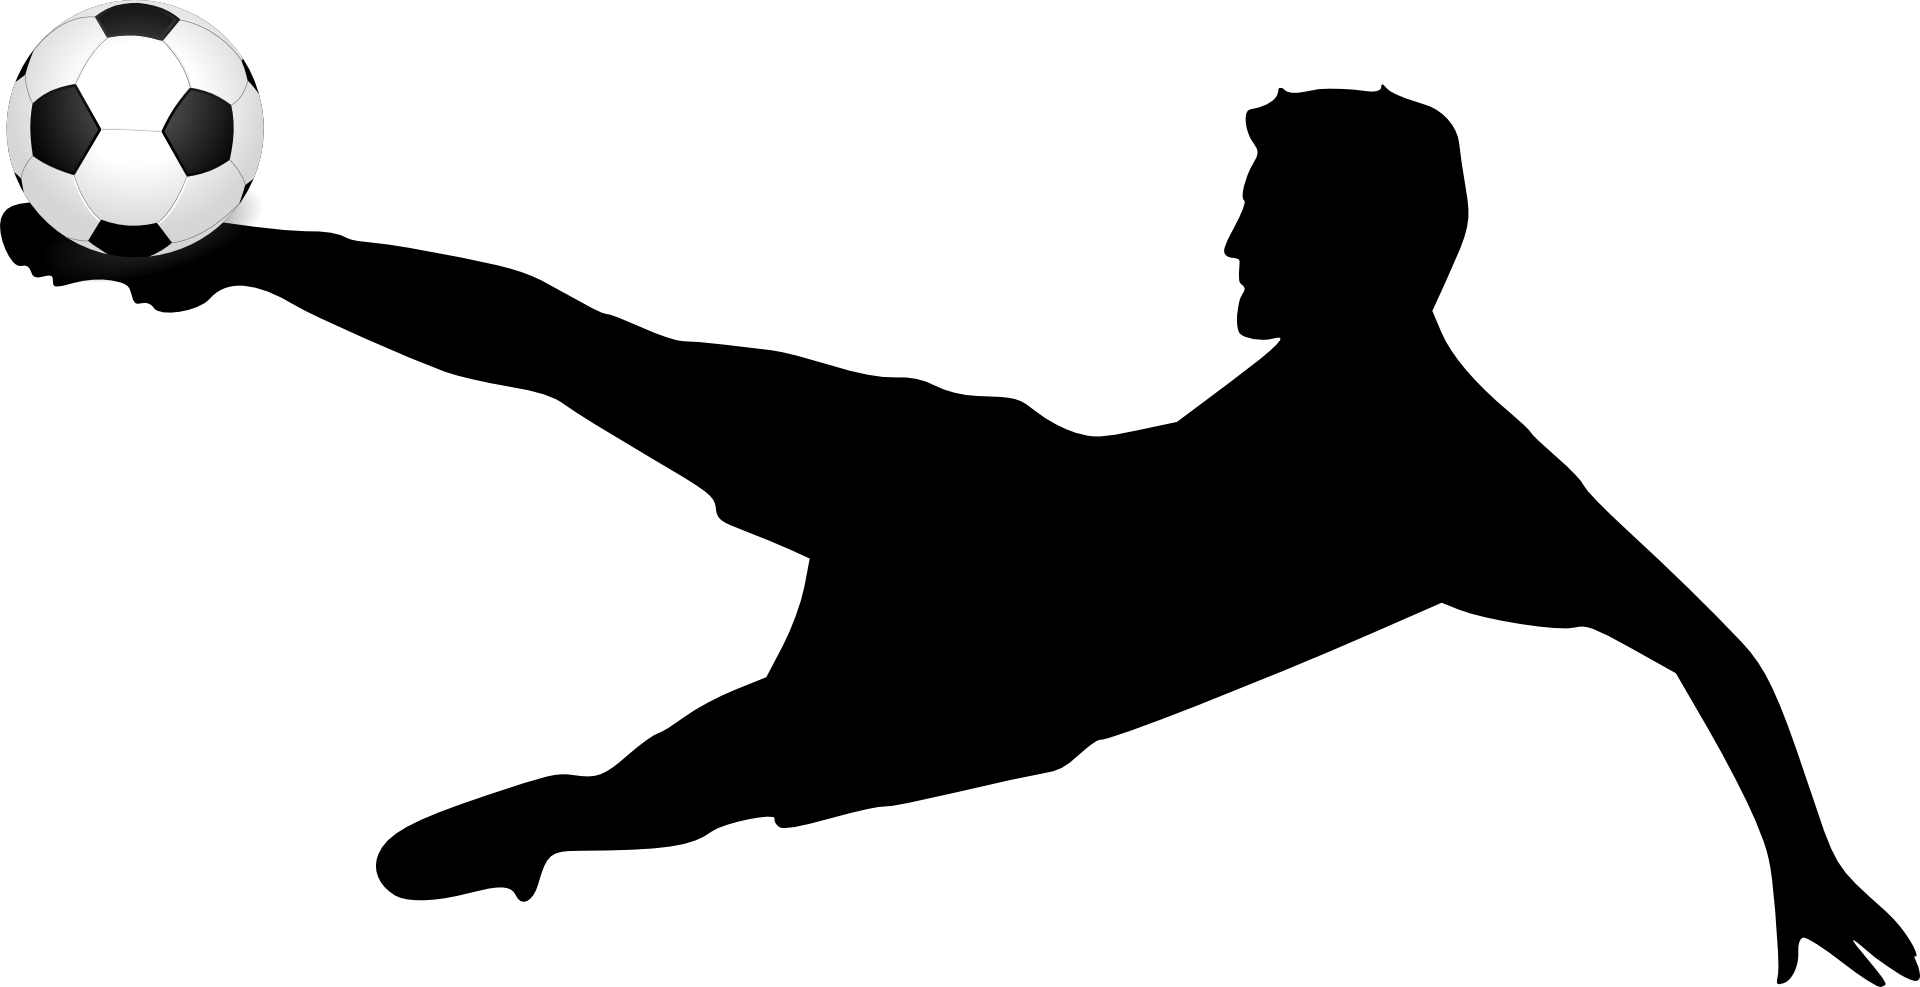 Rys. 3. Zdjęcie poglądowe przedstawia sylwetkę piłkarza w ruchu w pozycji poziomej, kopiącego piłkę. Postać piłkarza przedstawiono sylwetowo w czarnym kolorze, natomiast piłka jest czarno‑biała.